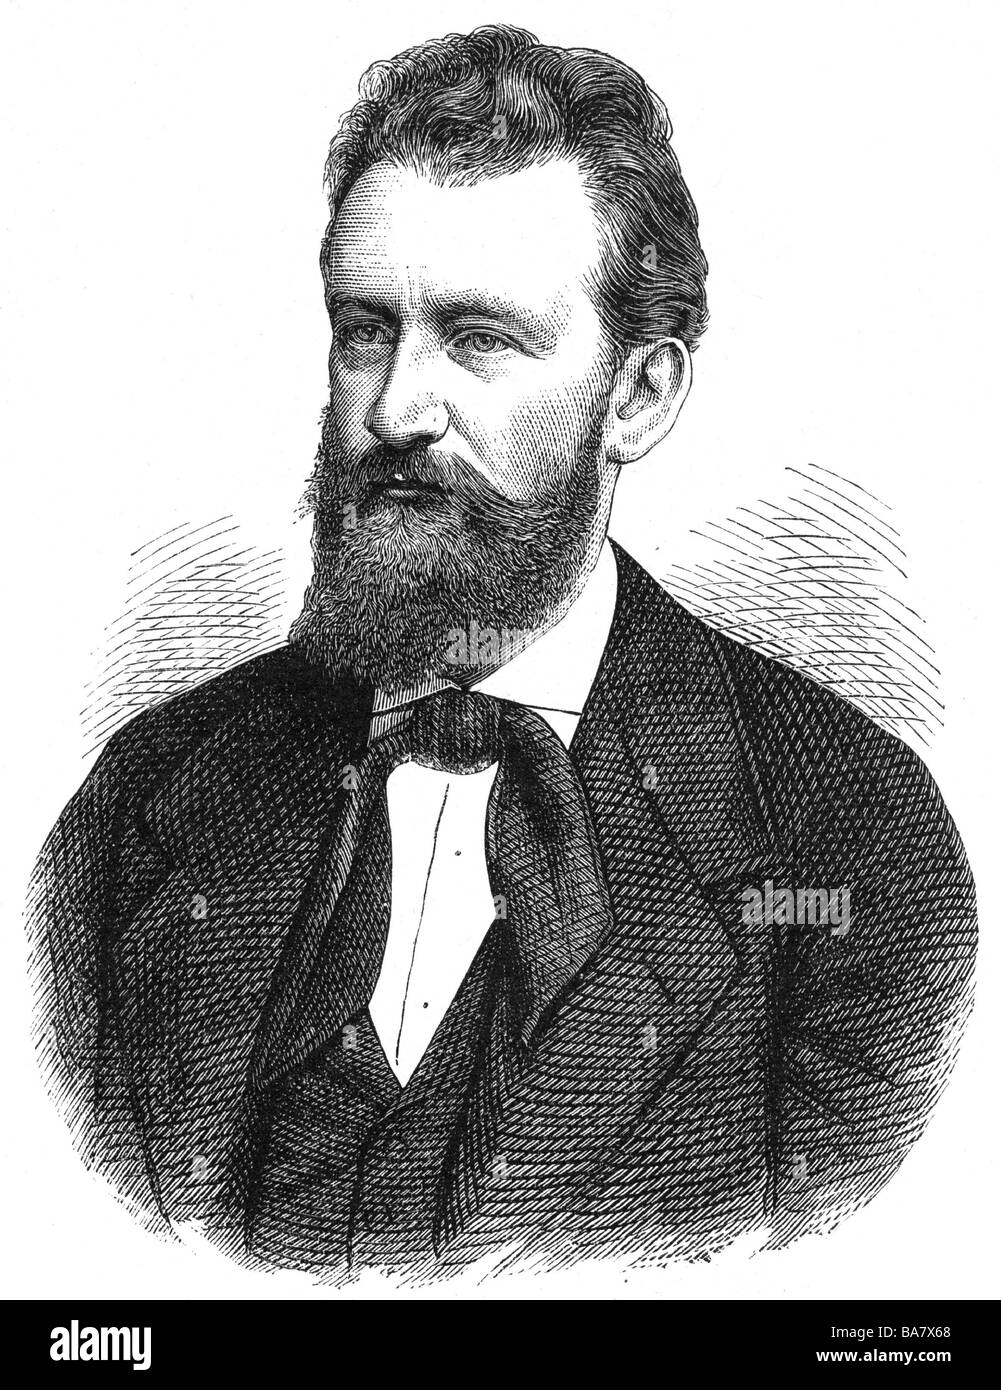 Millöcker, Karl, 29.4.1842 - 31.12.1899, músico austriaco (compositor), retrato, grabado en madera, siglo 19, Foto de stock